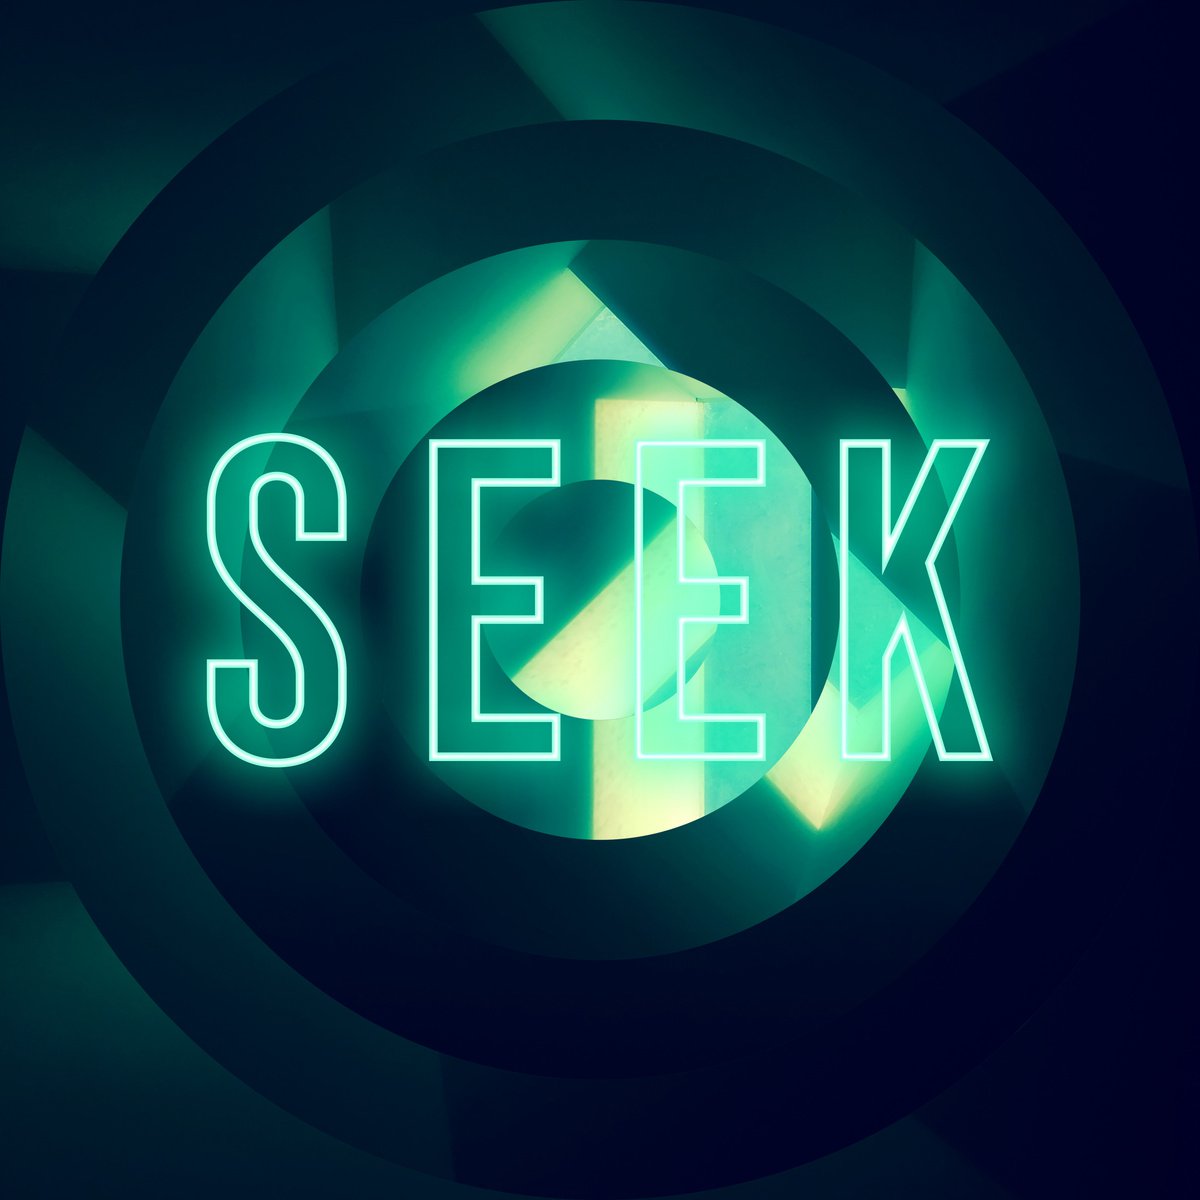 Neon Lockdown Inspiration Series 007: SEEK by Alex Walker